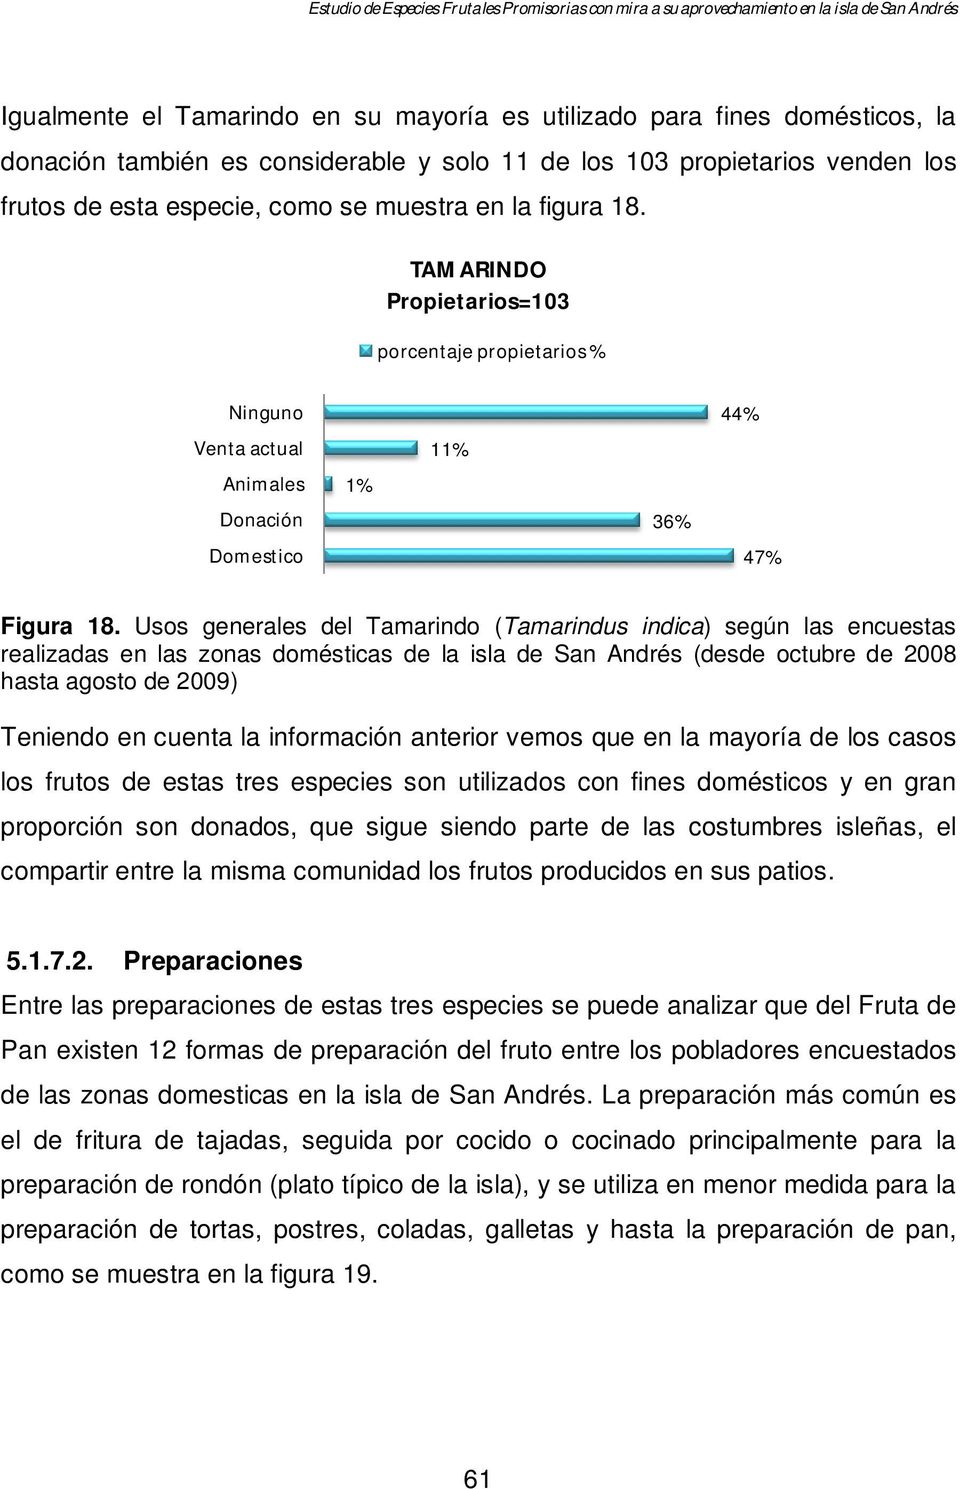 Usos generales del Tamarindo (Tamarindus indica) según las encuestas realizadas en las zonas domésticas de la isla de San Andrés (desde octubre de 2008 hasta agosto de 2009) Teniendo en cuenta la